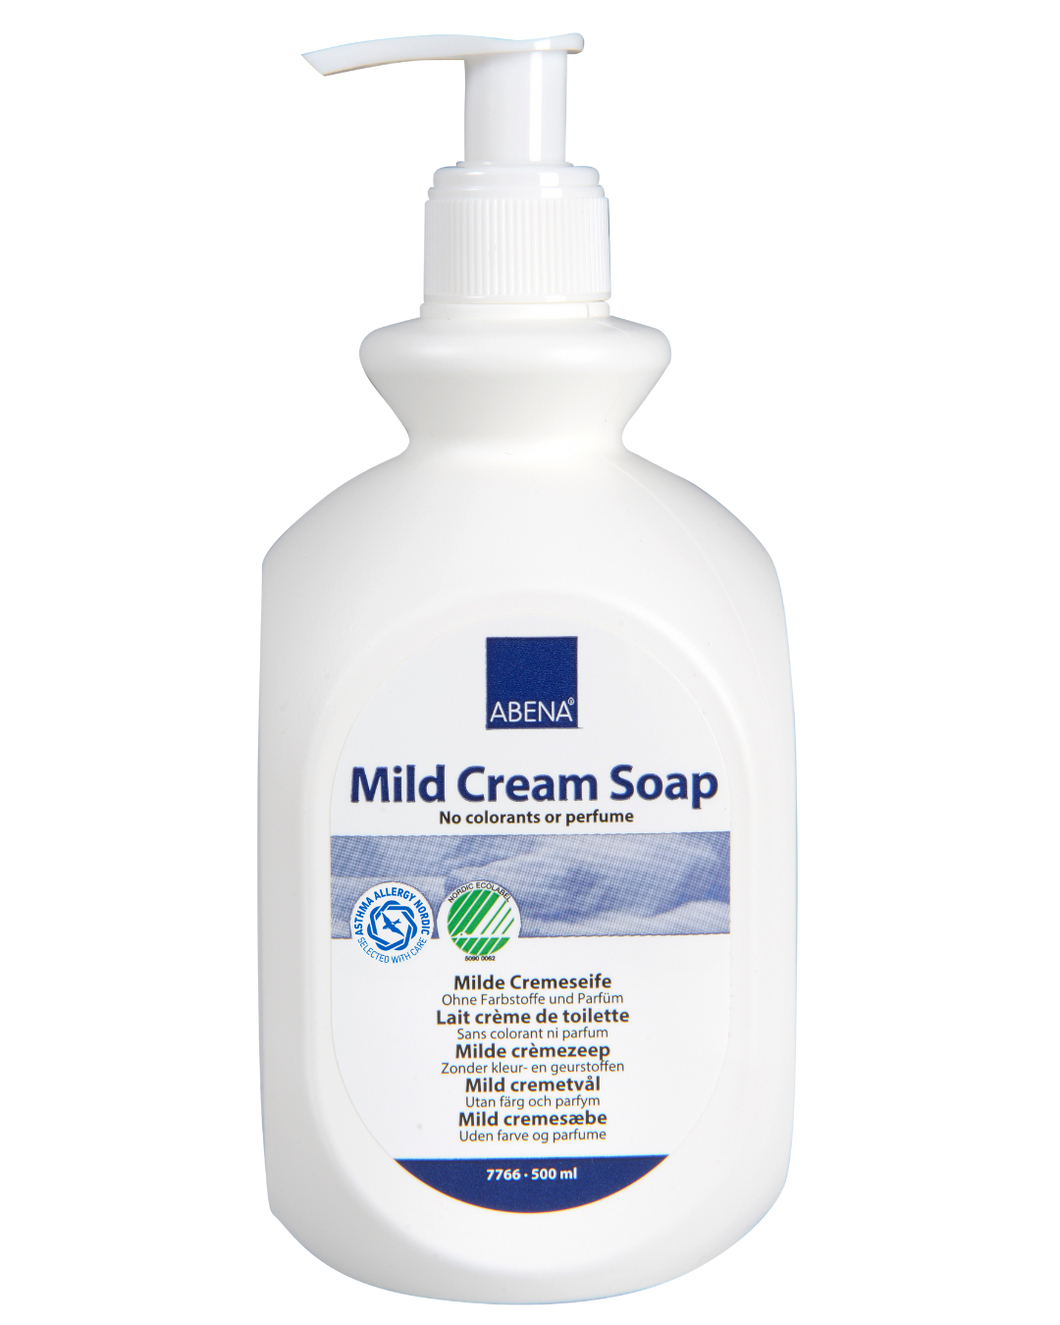 Mild Cream Soap